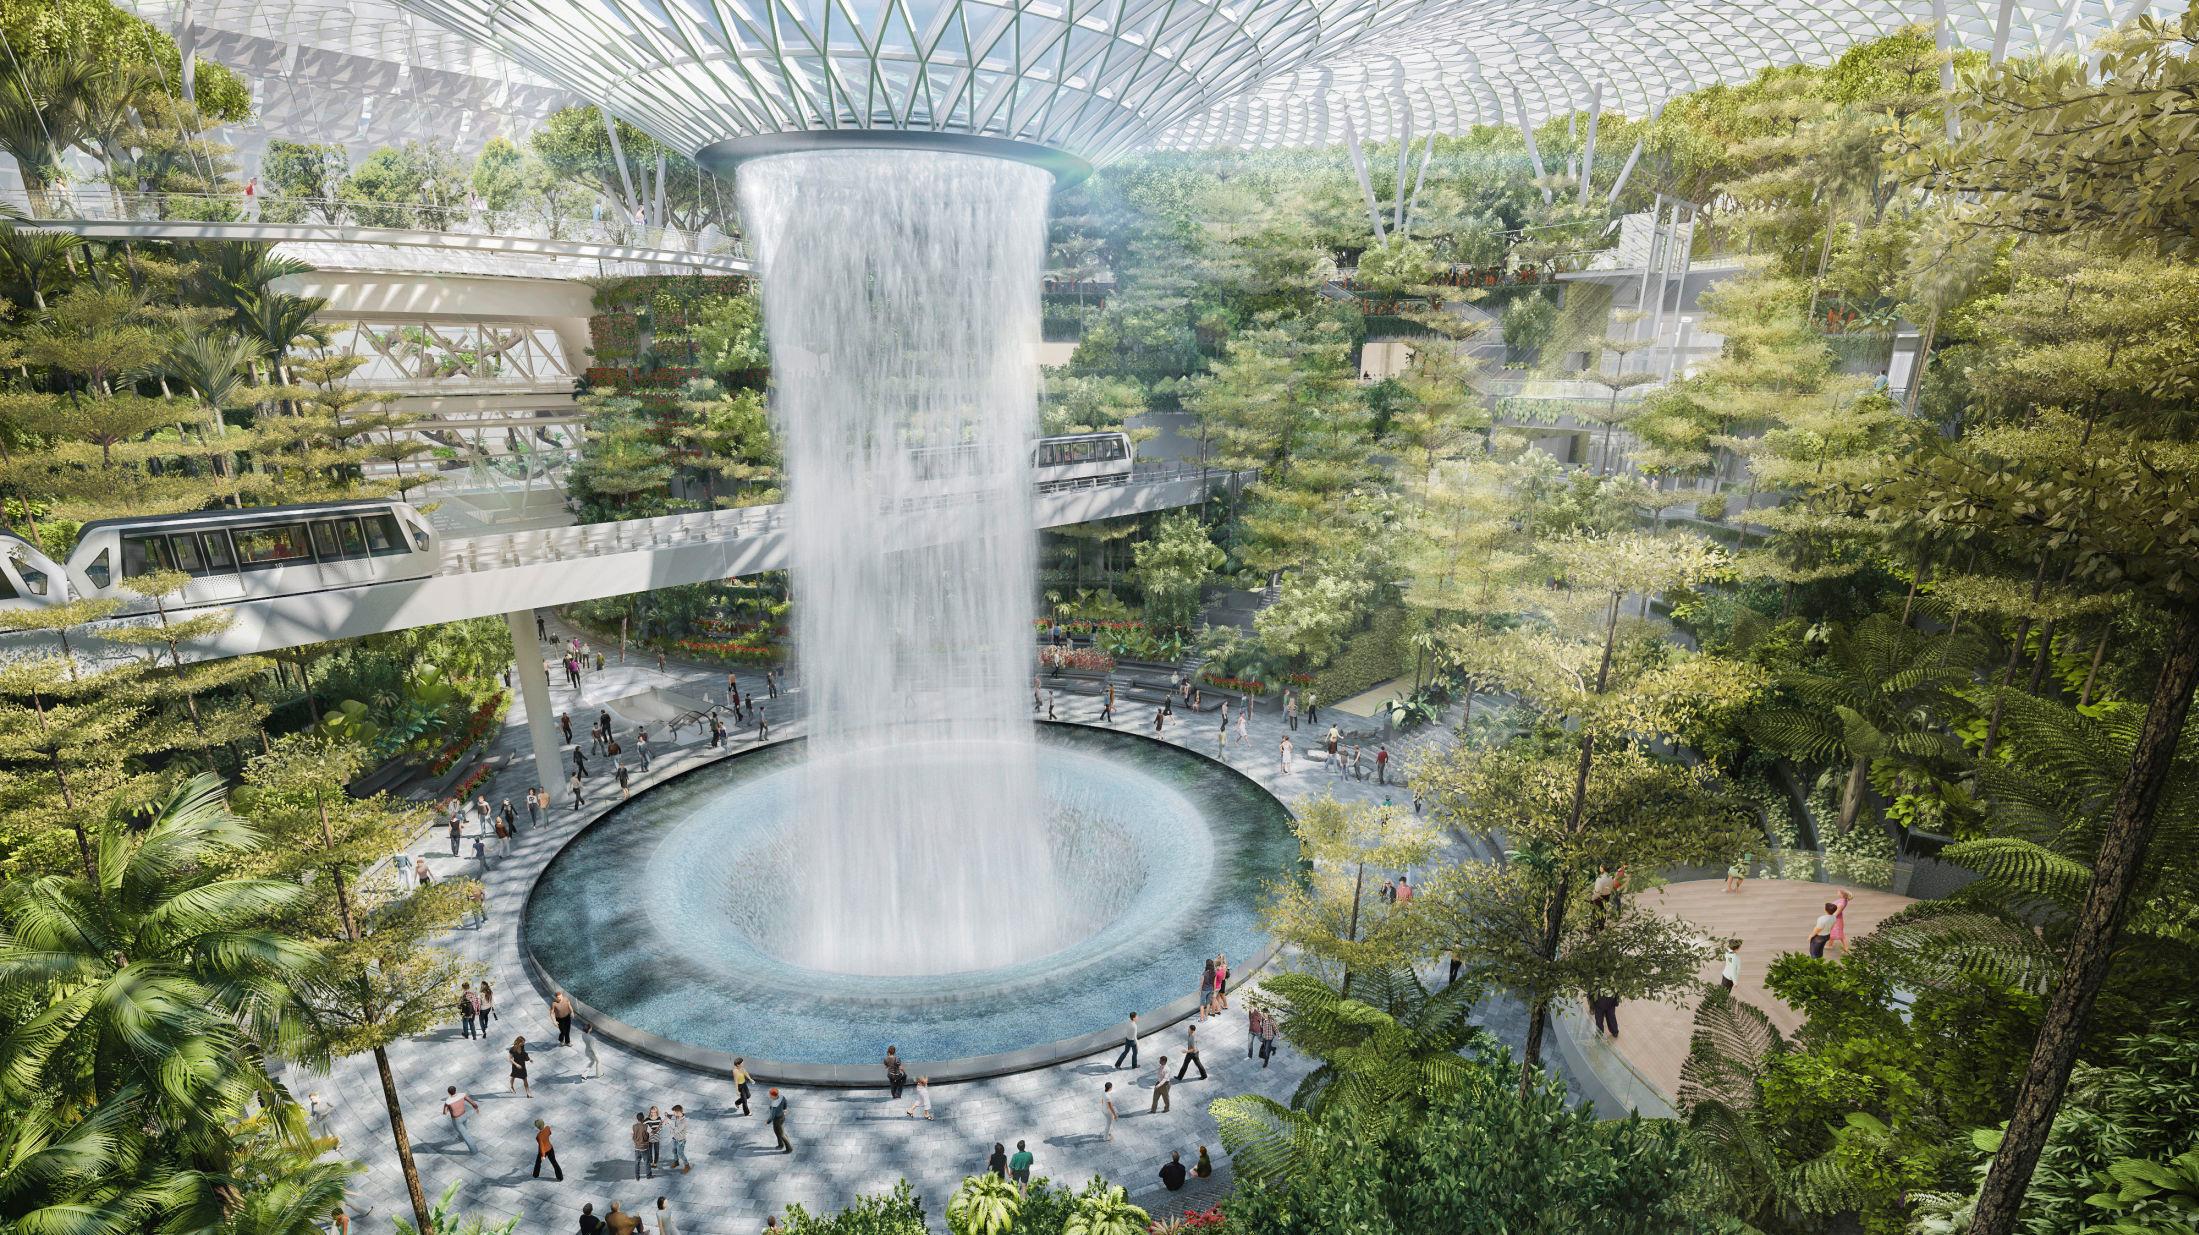 FOSSEFALL: I midten av Jewel i Singapore vil det være både en liten «skog» og et fossefall. Foto: Jewel Changi Airport